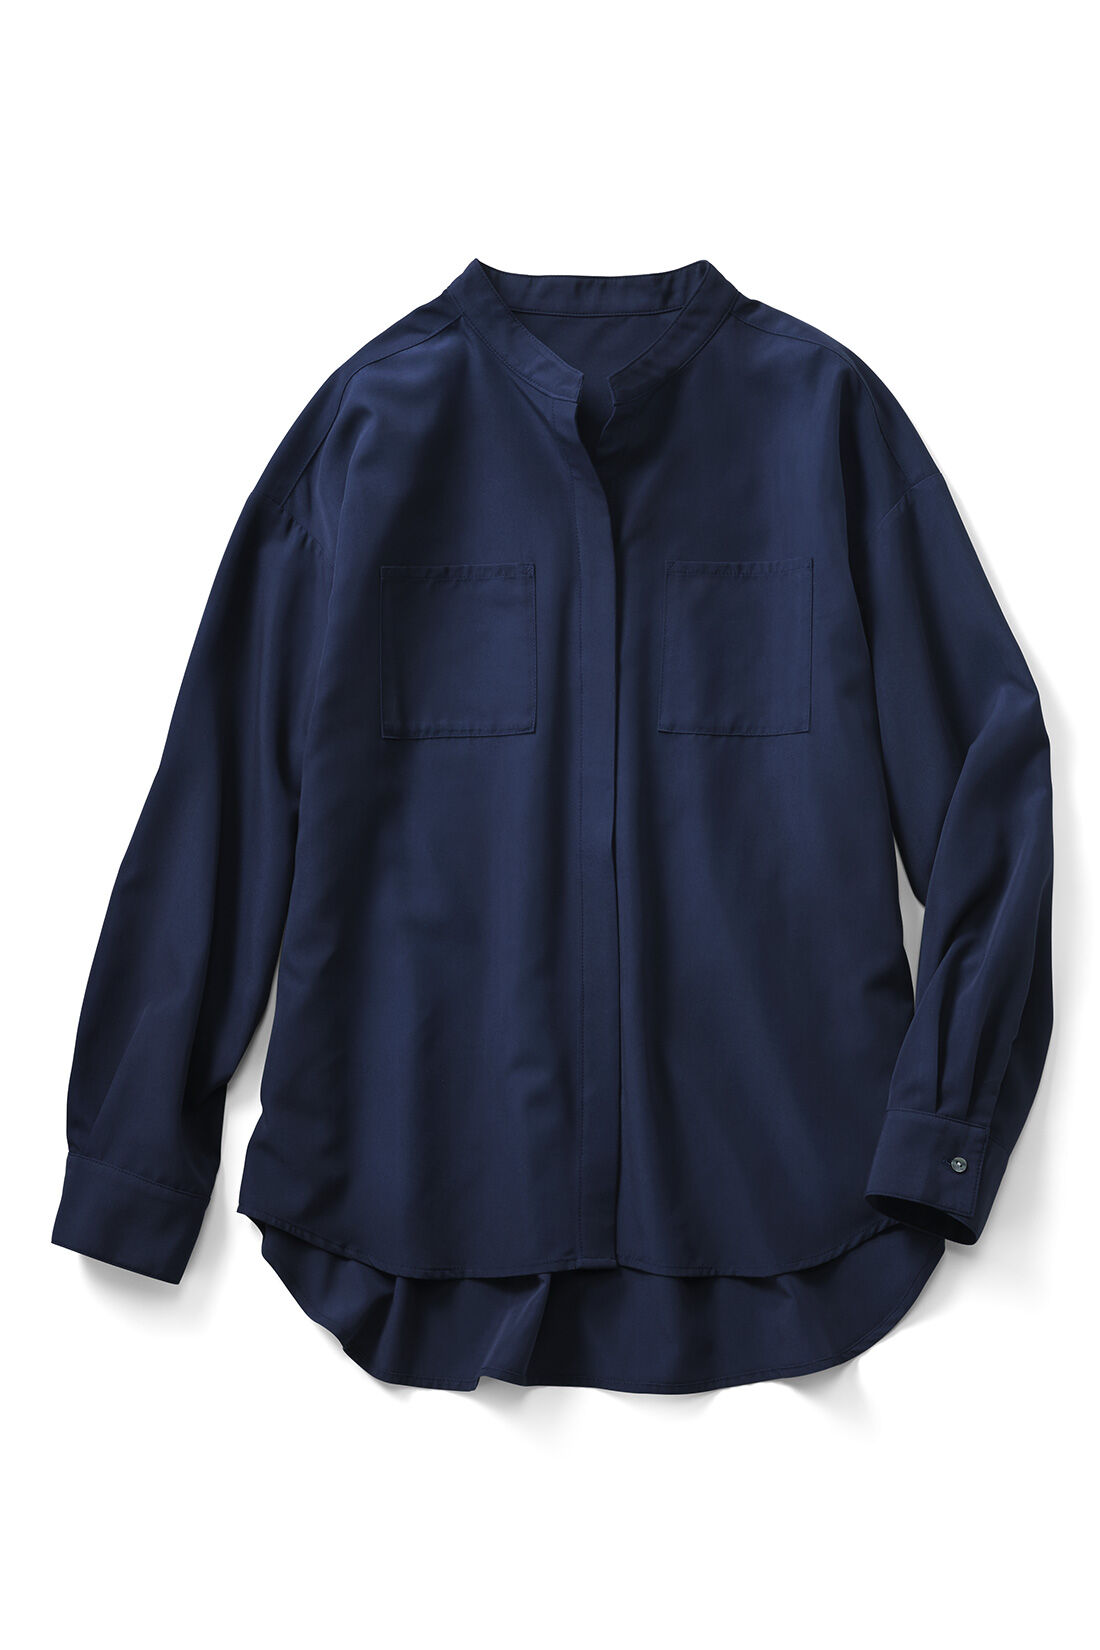 Real Stock|IEDIT[イディット]  小森美穂子さんコラボ　とろみブラウスとこだわりシック柄パンツのコーディネイトセット〈ネイビー〉|両胸にポケットが付いたカジュアルデザイン。